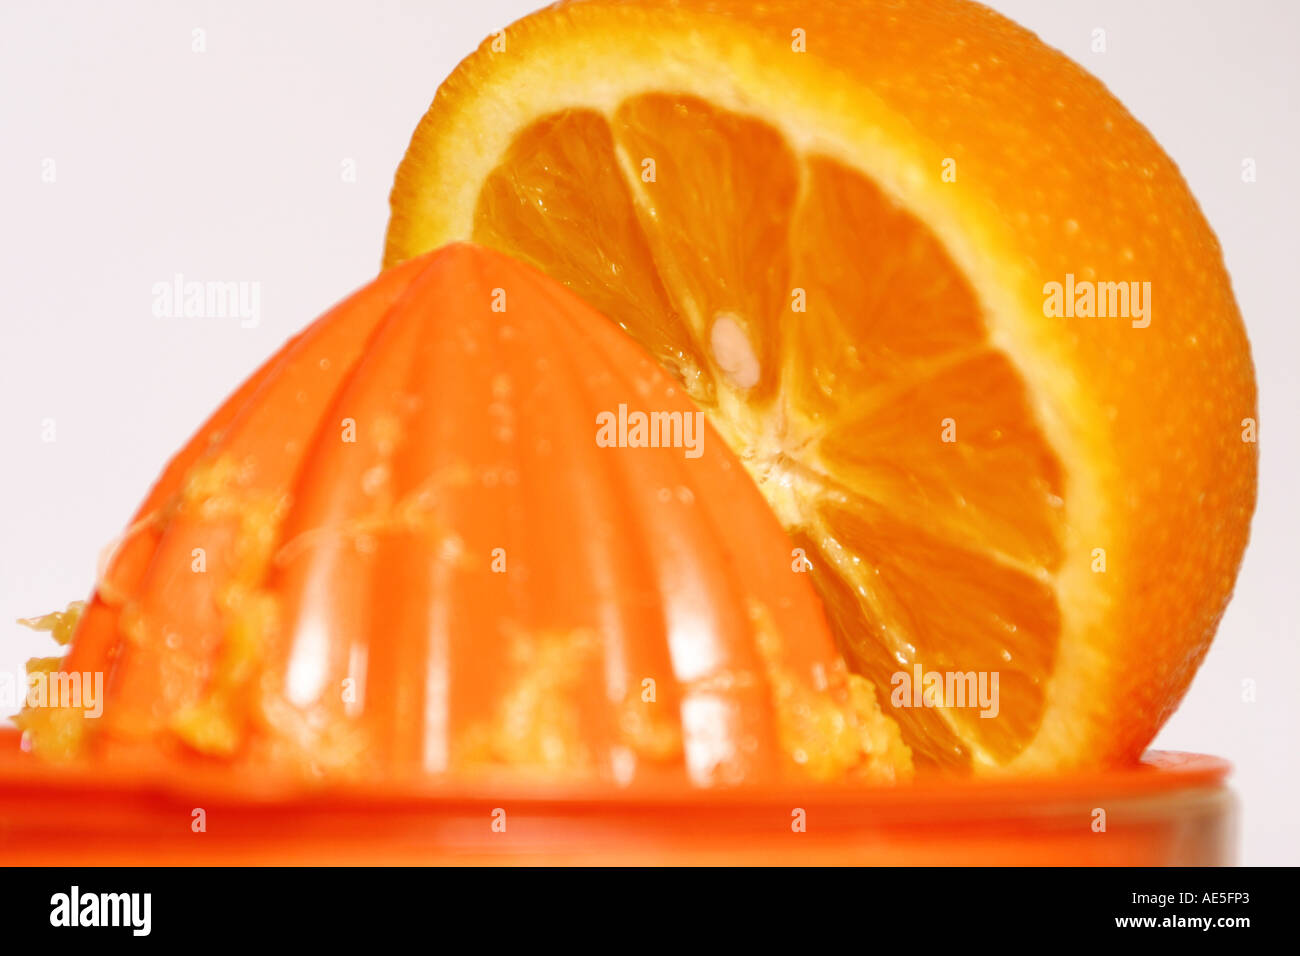 Orange presses Stock Photo